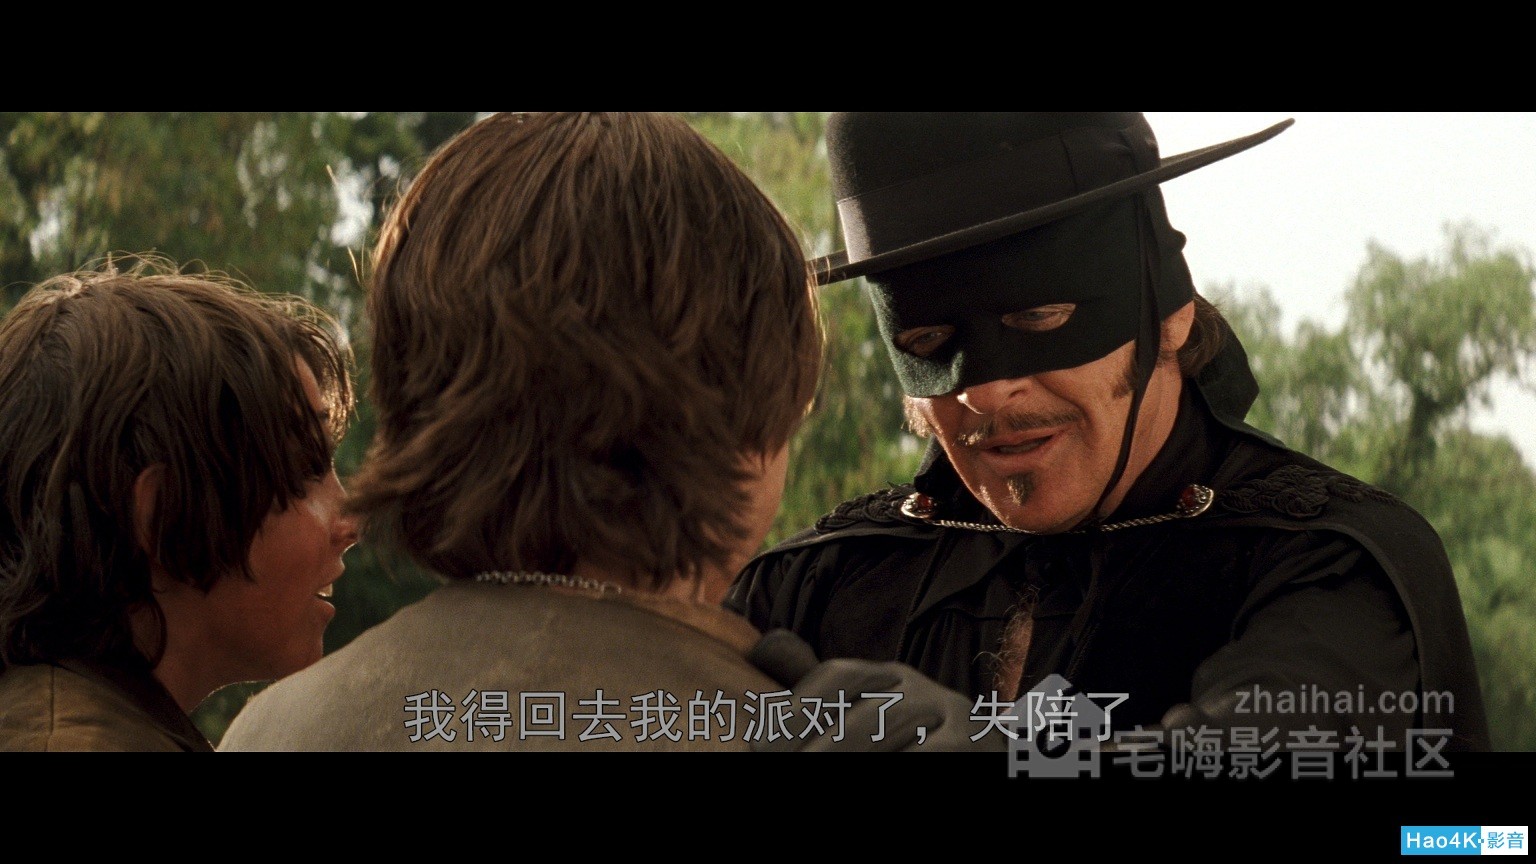 Mask of Zorro, The %_4K Ultra HD_20200516_214014.221.jpg